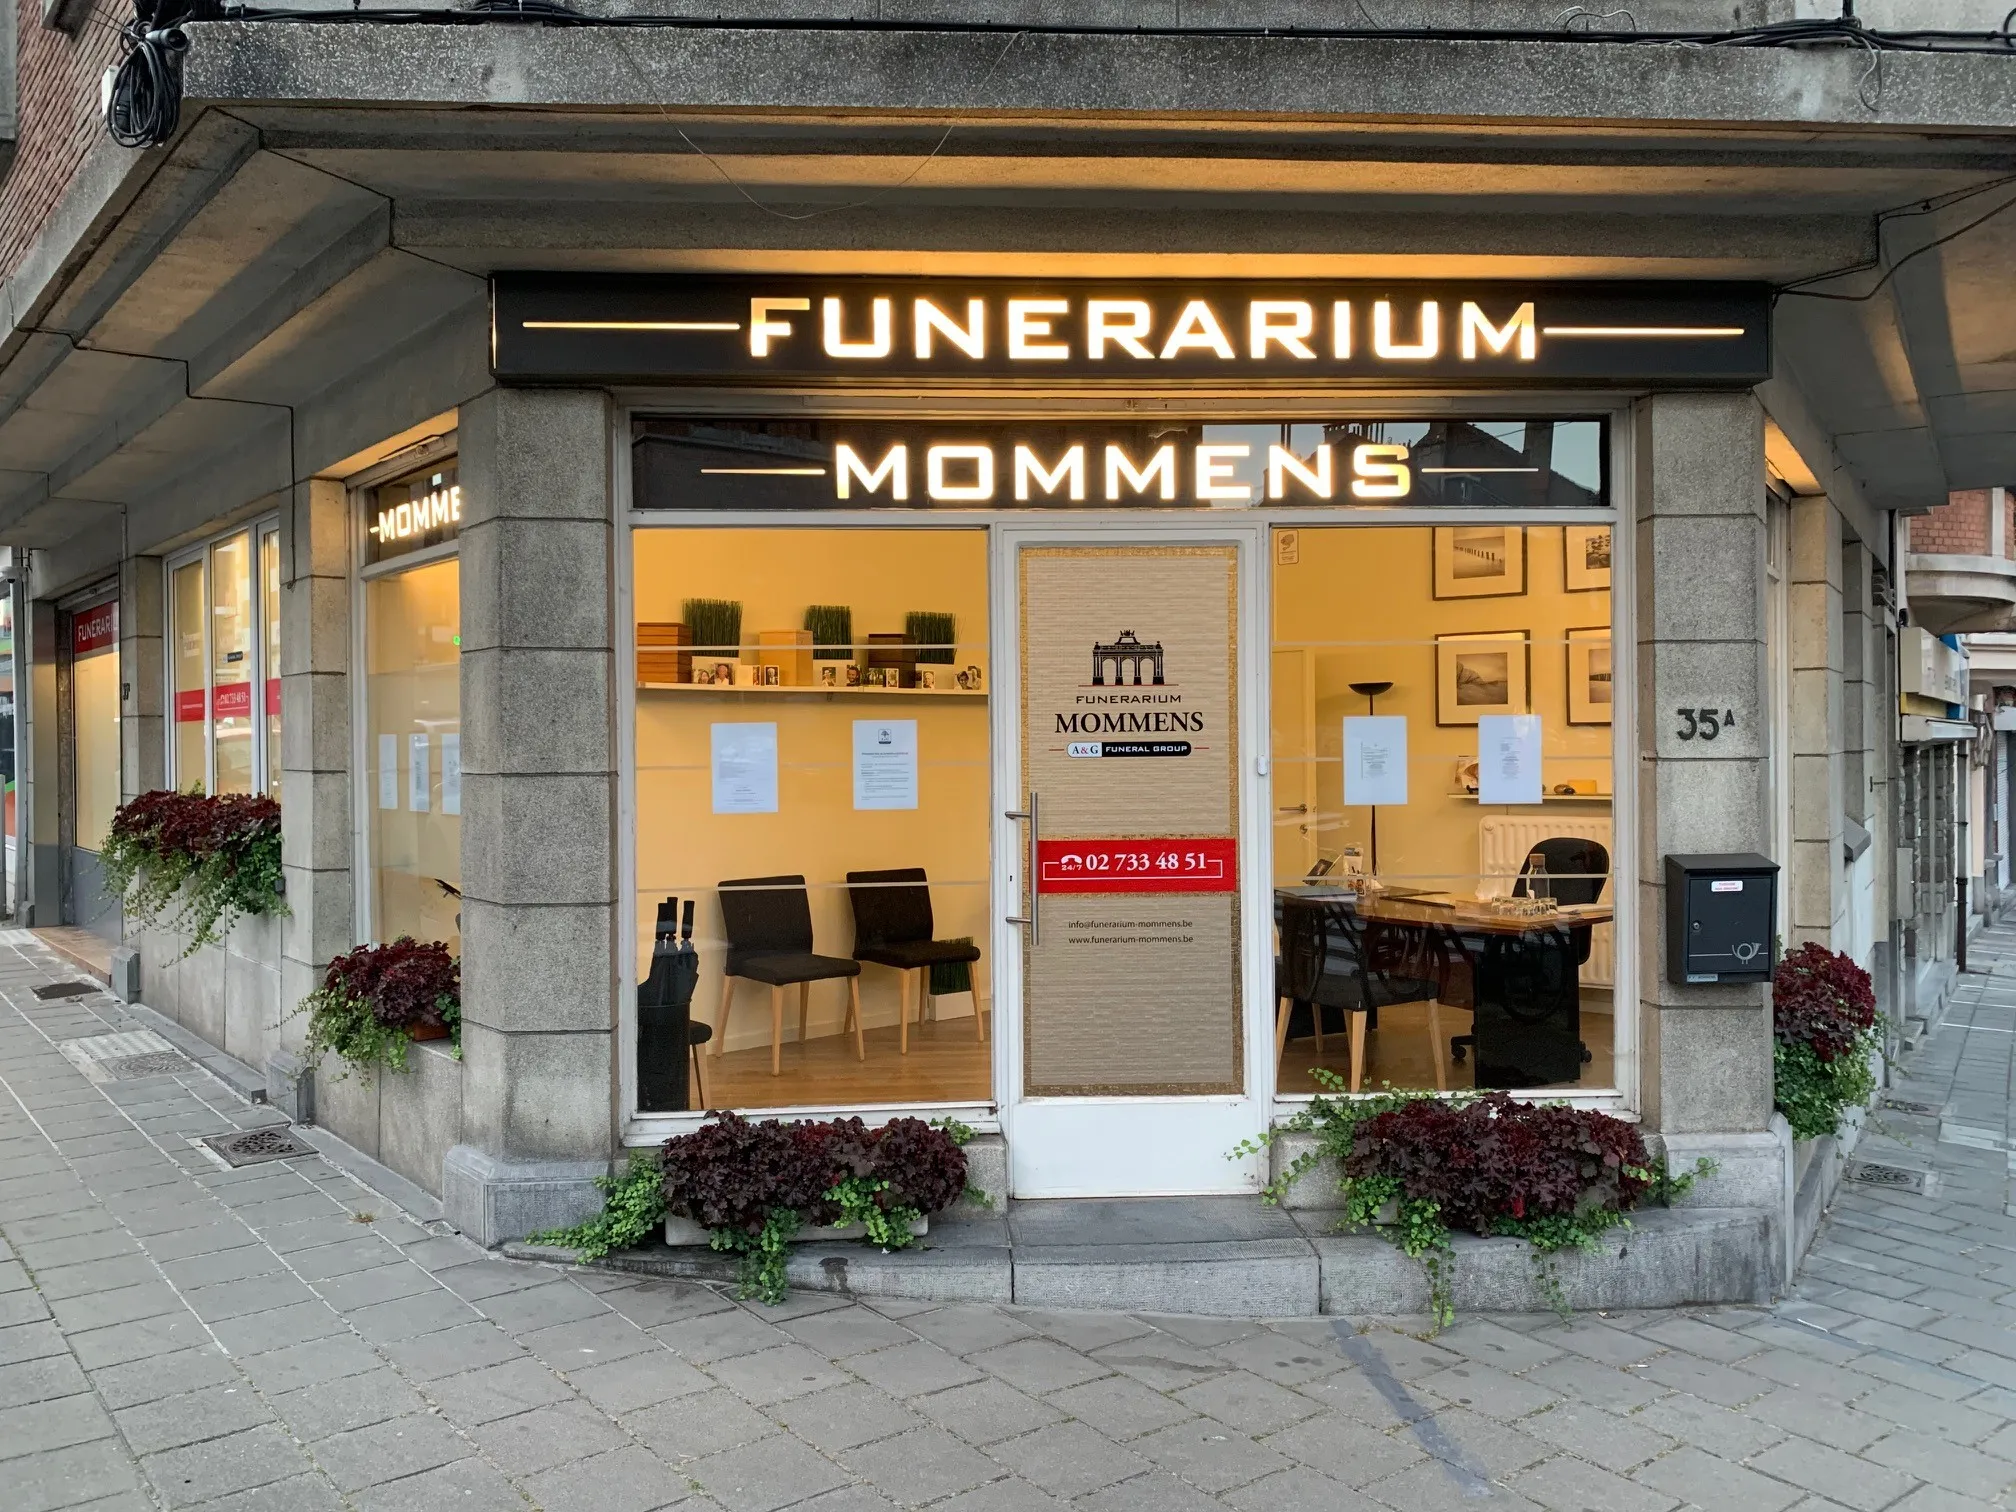 Funerarium Mommens